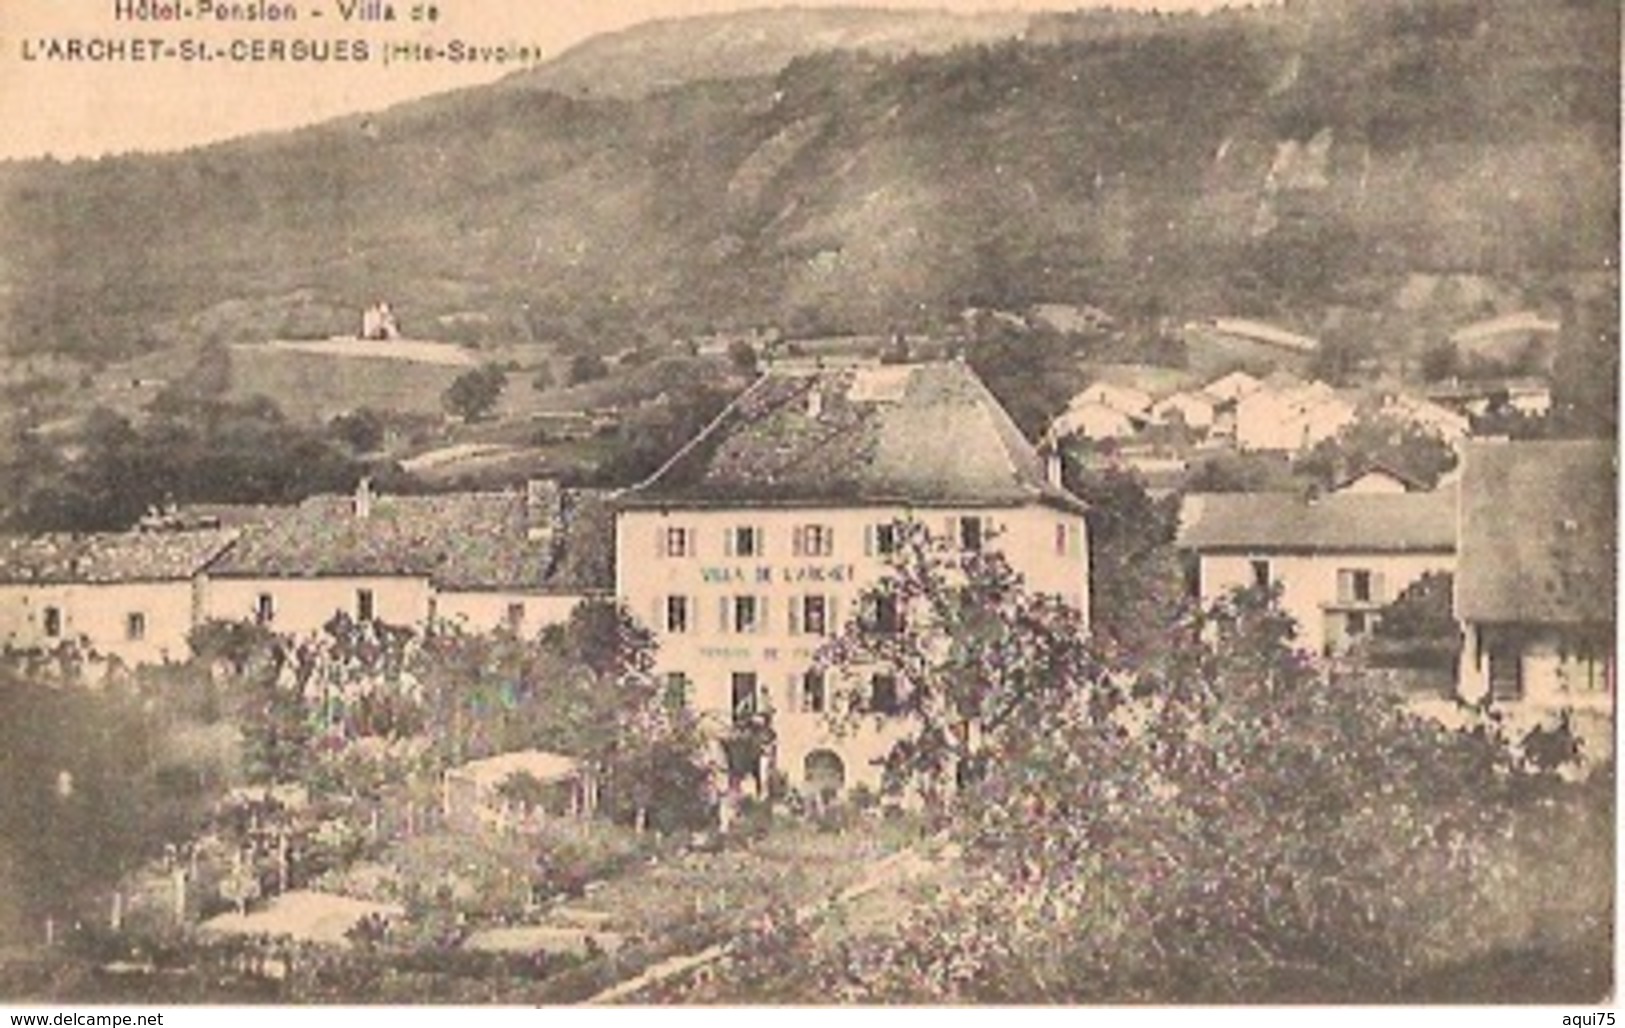 Hôtel-Pension-Villa De L'ARCHET -St Cergues - Saint-Cergues